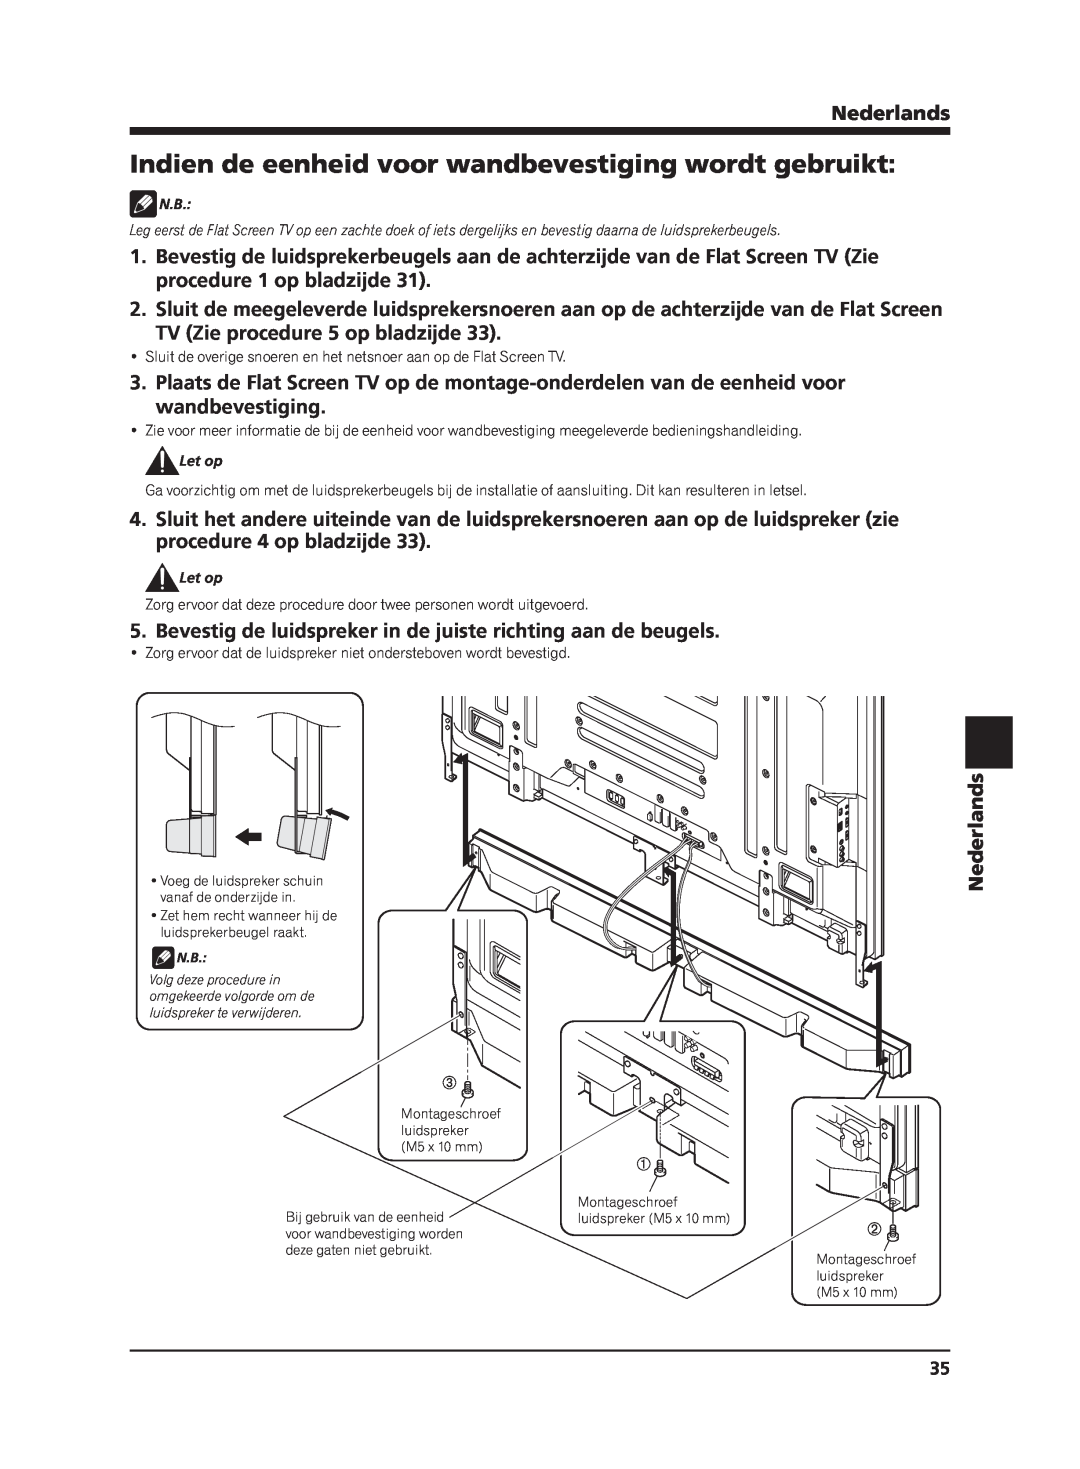 Pioneer PDP-S65 manual TV Zie procedure 5 op bladzijde, Nederlands 